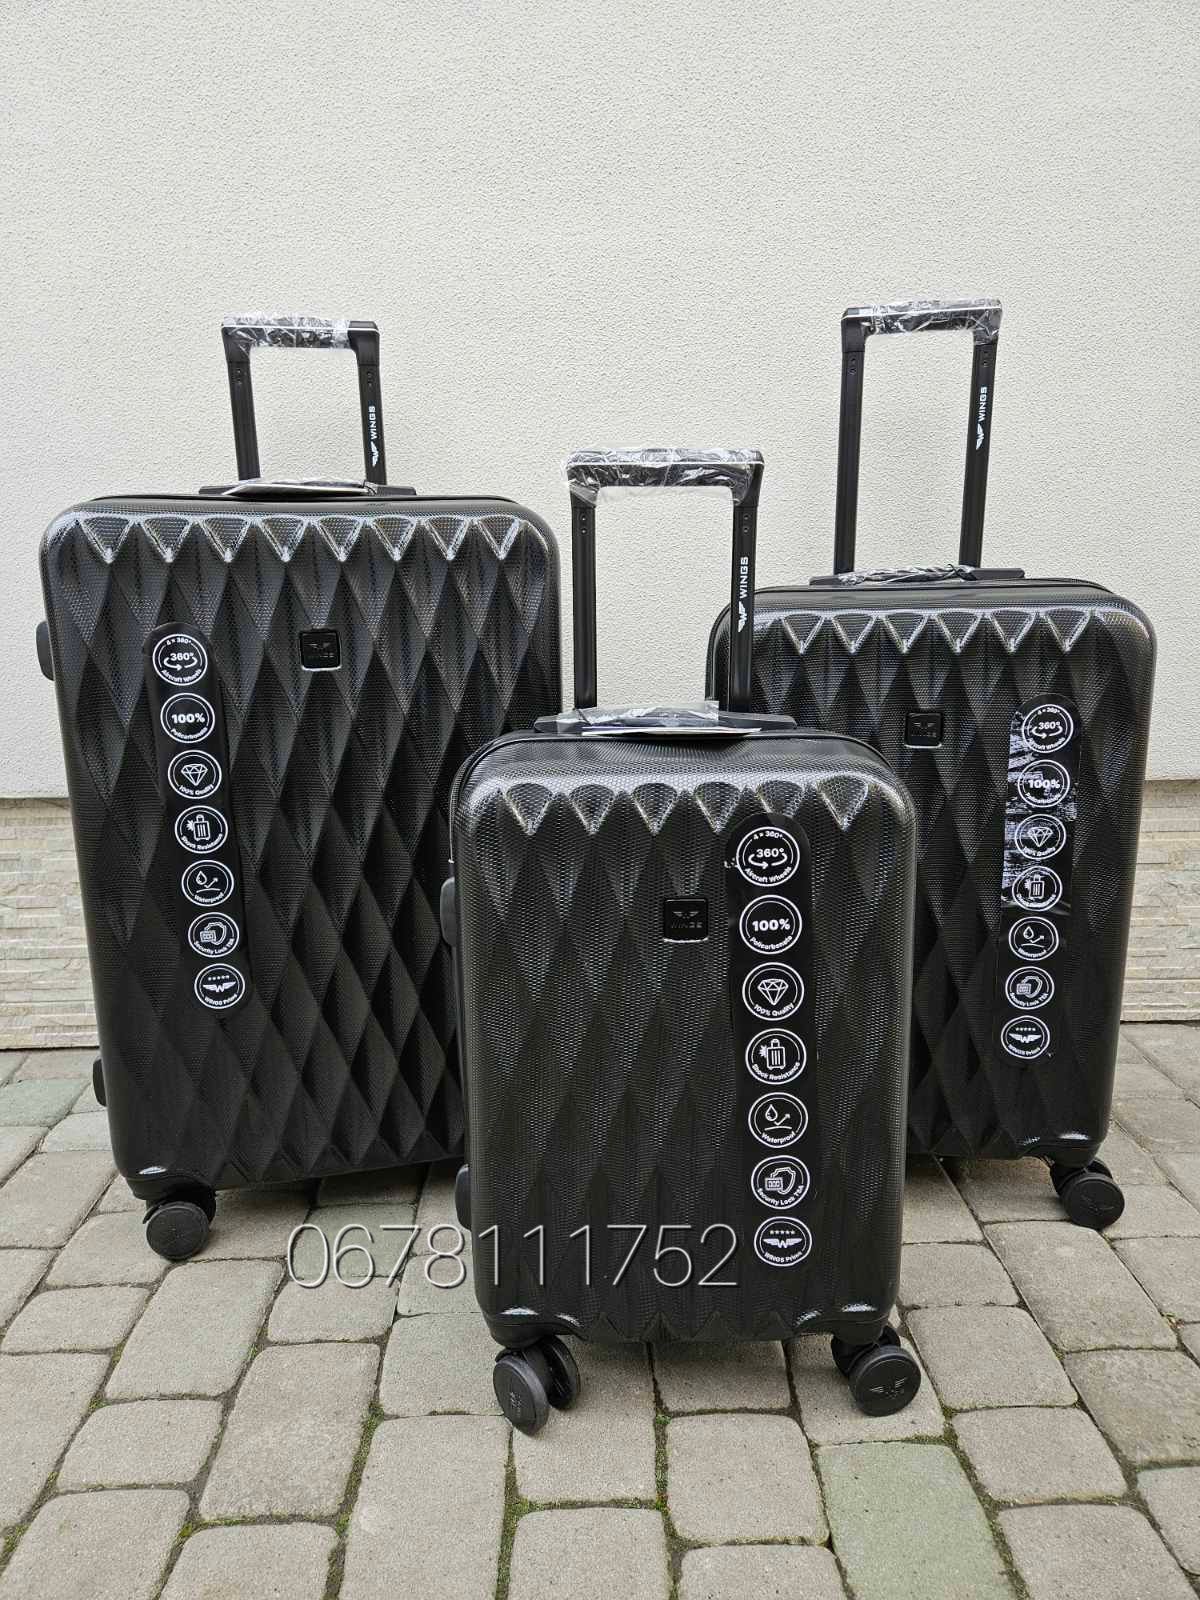 WINGS PC190 Польща комплект S/M/L валізи чемоданы сумки на колесах